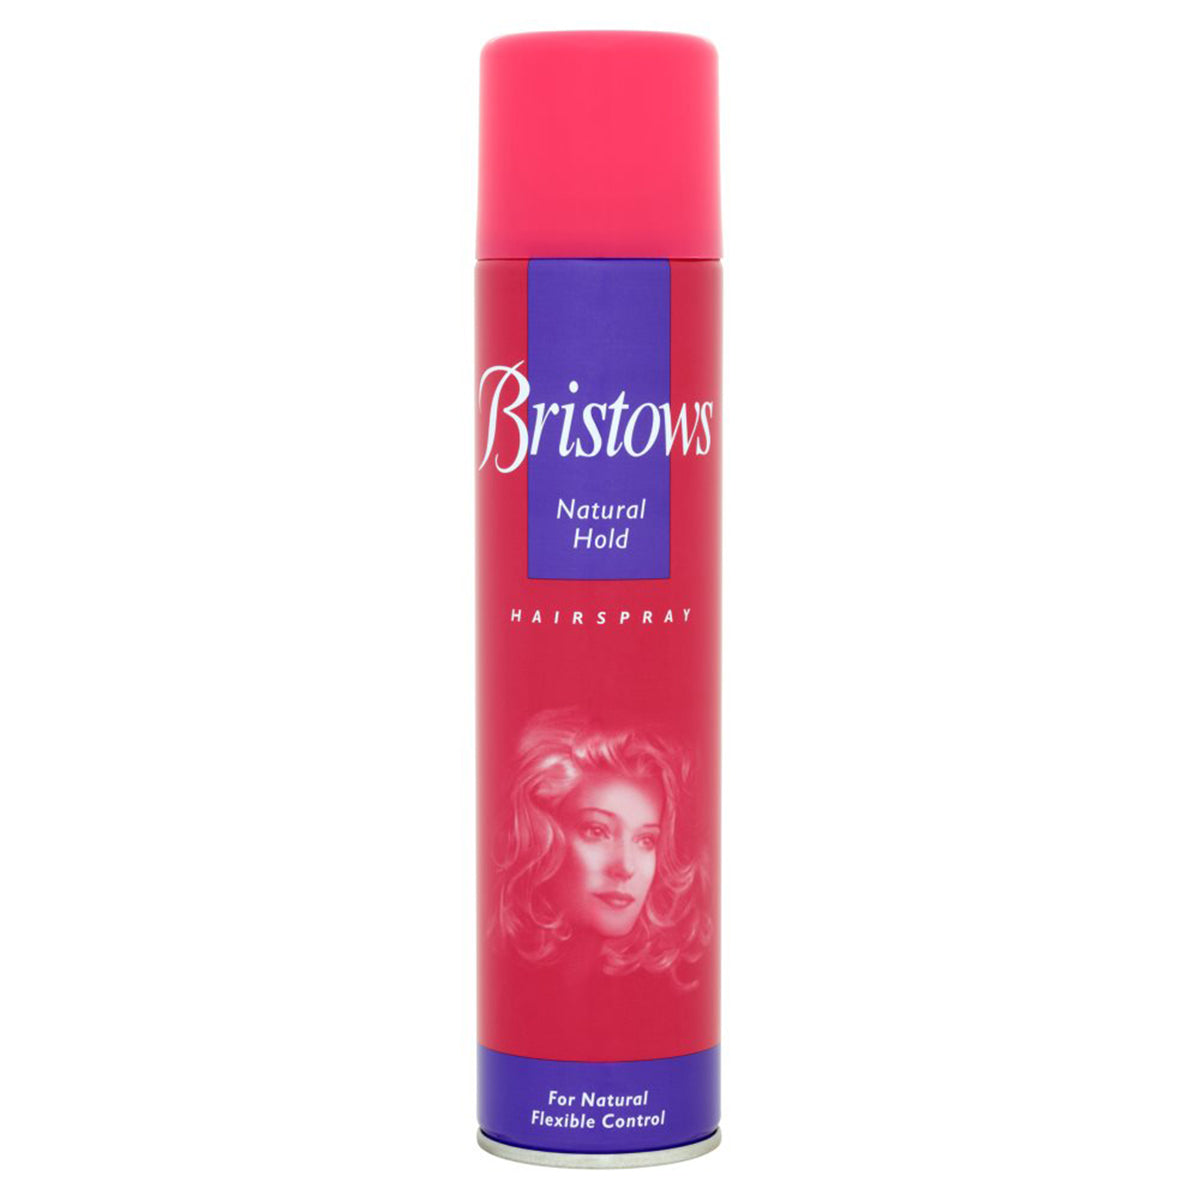 Bristows Natural Hold Hairspray 300ml.